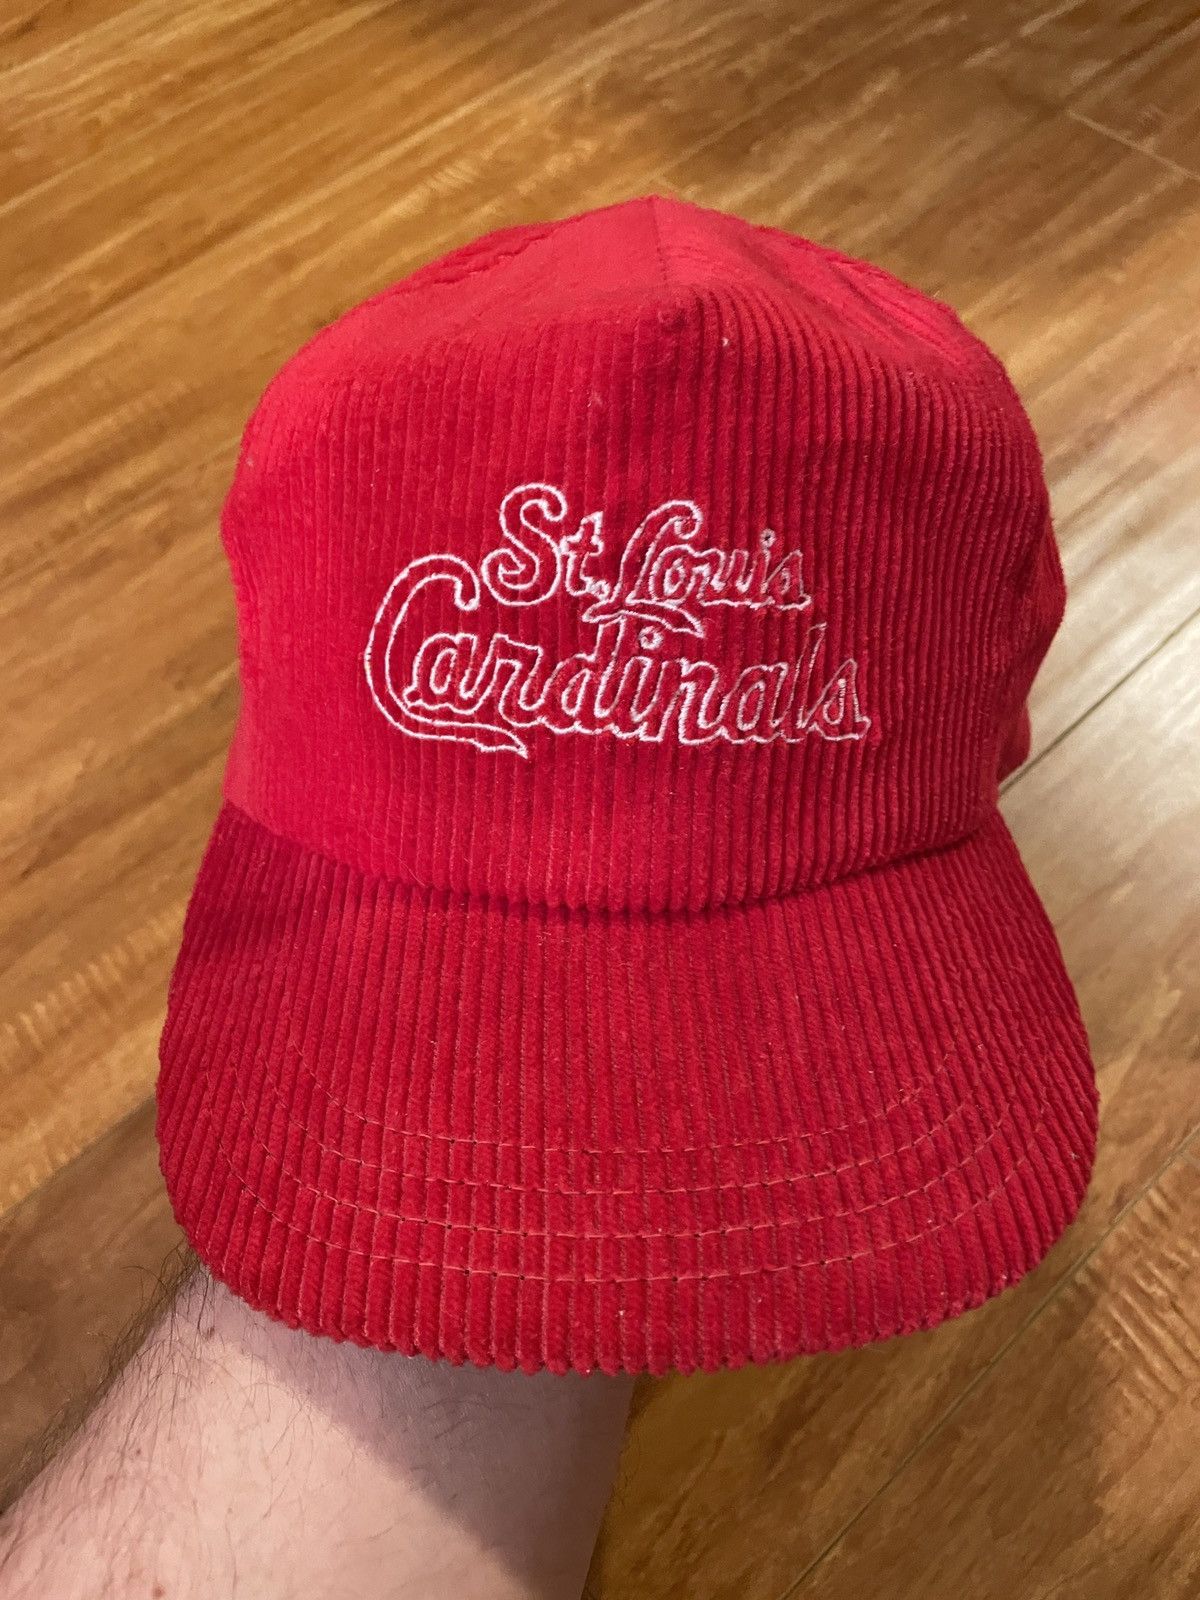 Vintage Vintage St. Louis Cardinals Hat | Grailed